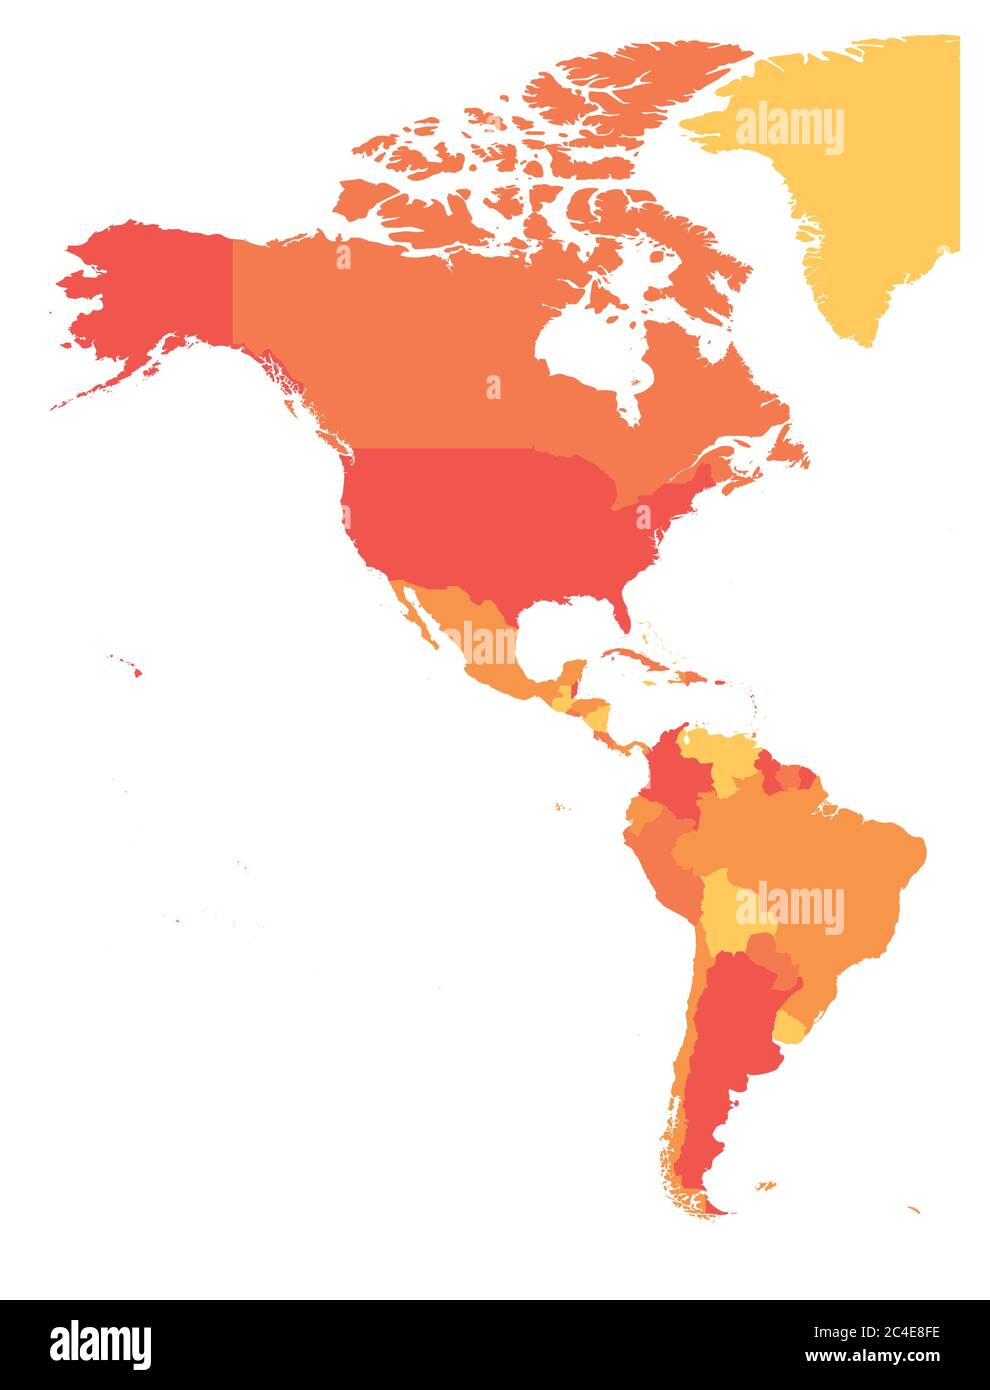 Politische Landkarte Amerikas in vier Orangetönen. Nord- und Südamerika. Einfache flache Vektordarstellung. Stock Vektor